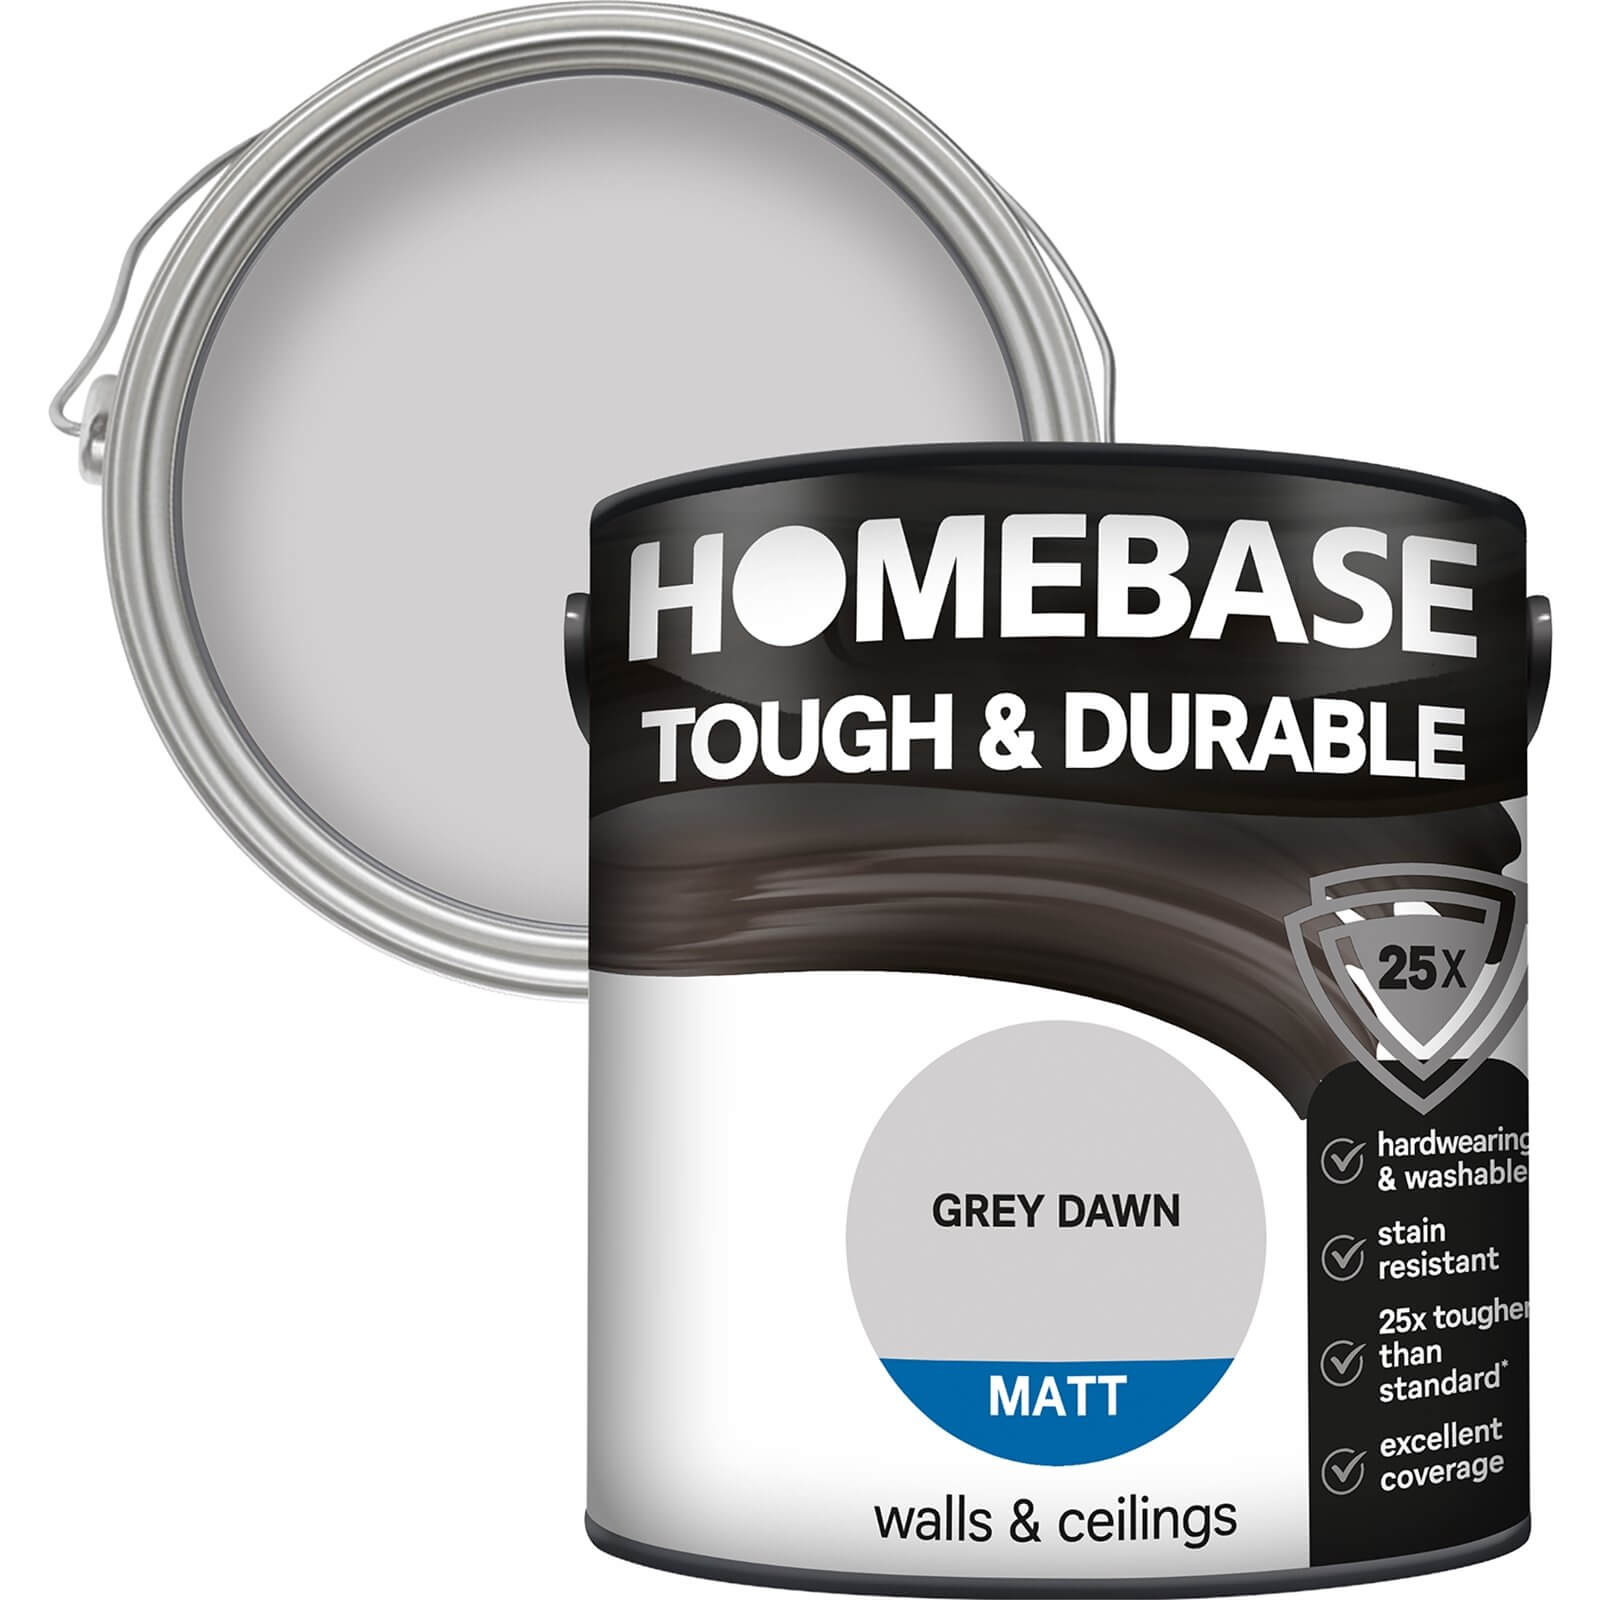 Homebase Tough & Durable Matt Paint Grey Dawn - 2.5L